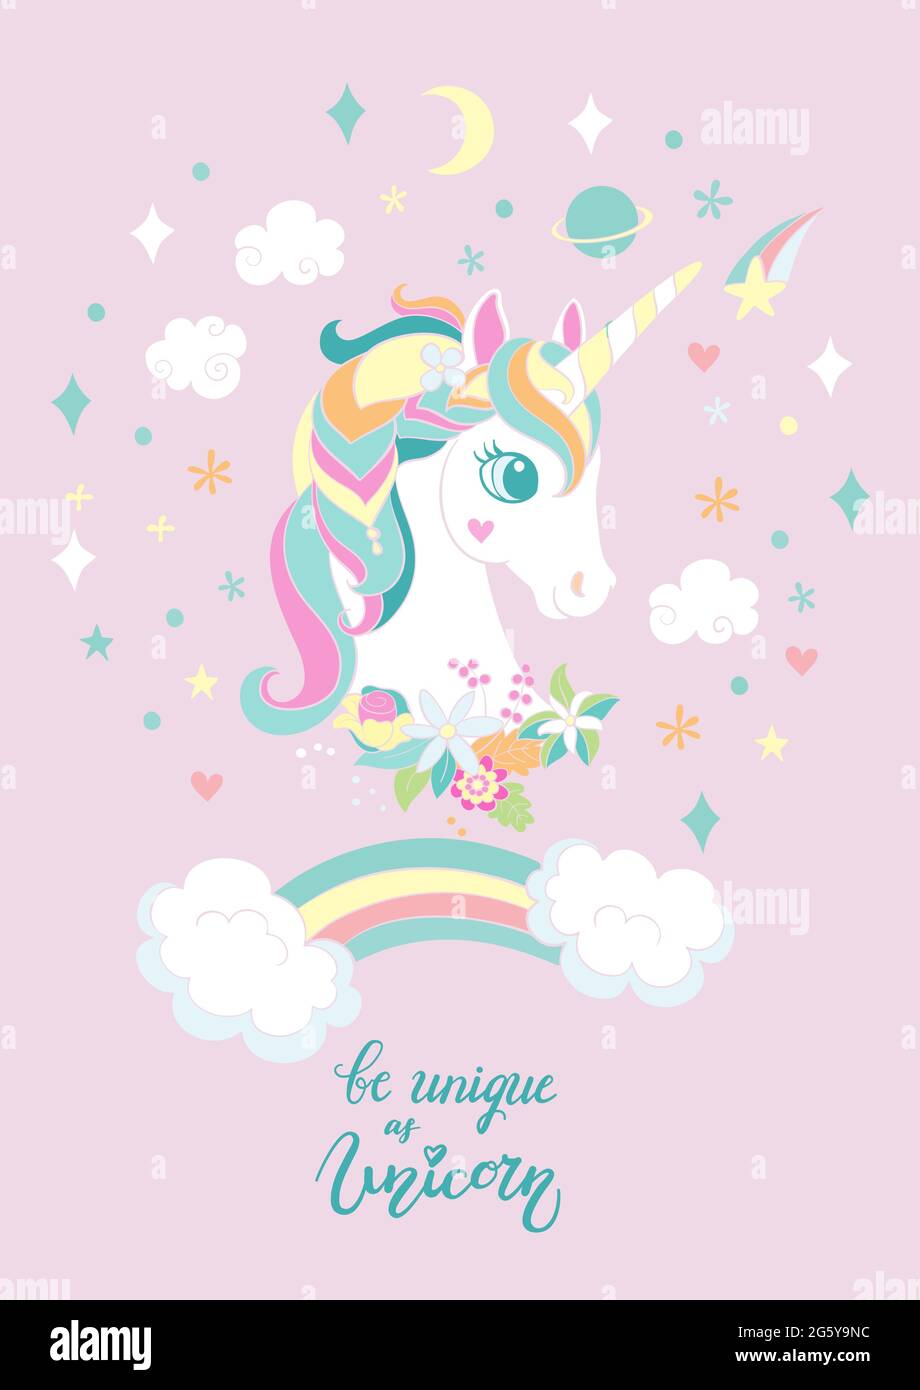 Unicorno bianco fumetto con arcobaleno ed elementi magici. Immagine verticale del vettore isolata su sfondo rosa. Per adesivi, design, decorazioni, stampe e. Illustrazione Vettoriale